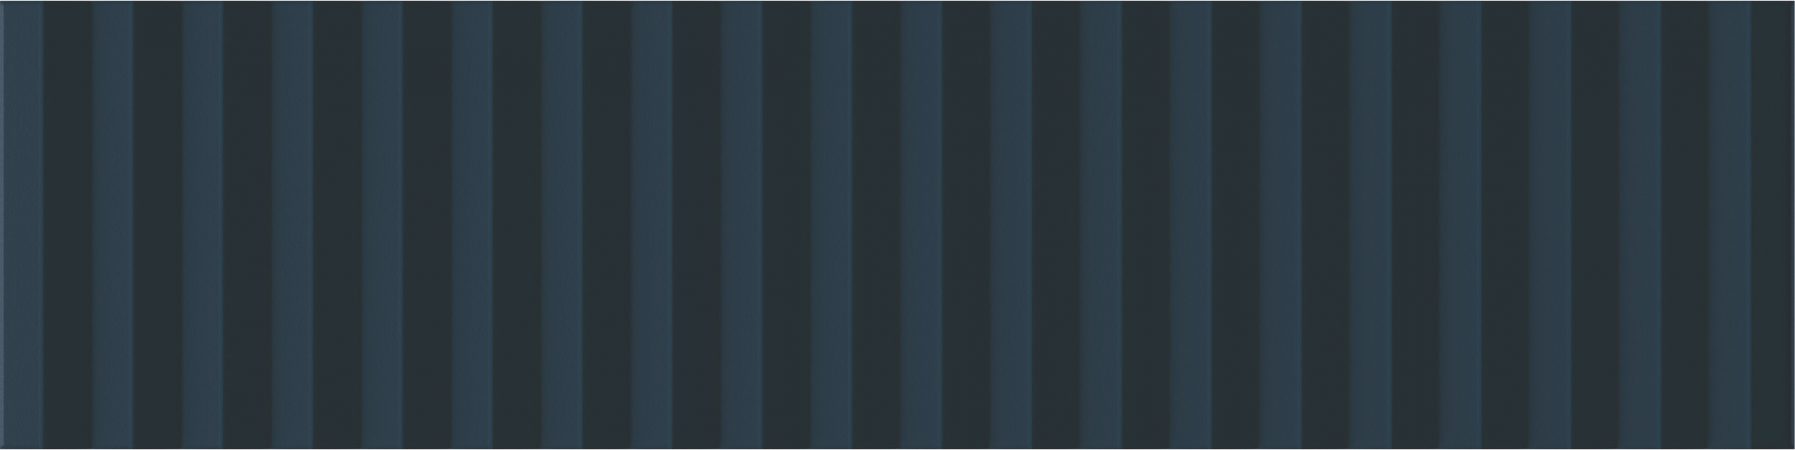 Керамическая плитка Wow Twin Peaks Med Aegean Blue 131556, цвет синий, поверхность матовая 3d (объёмная), под кирпич, 75x300